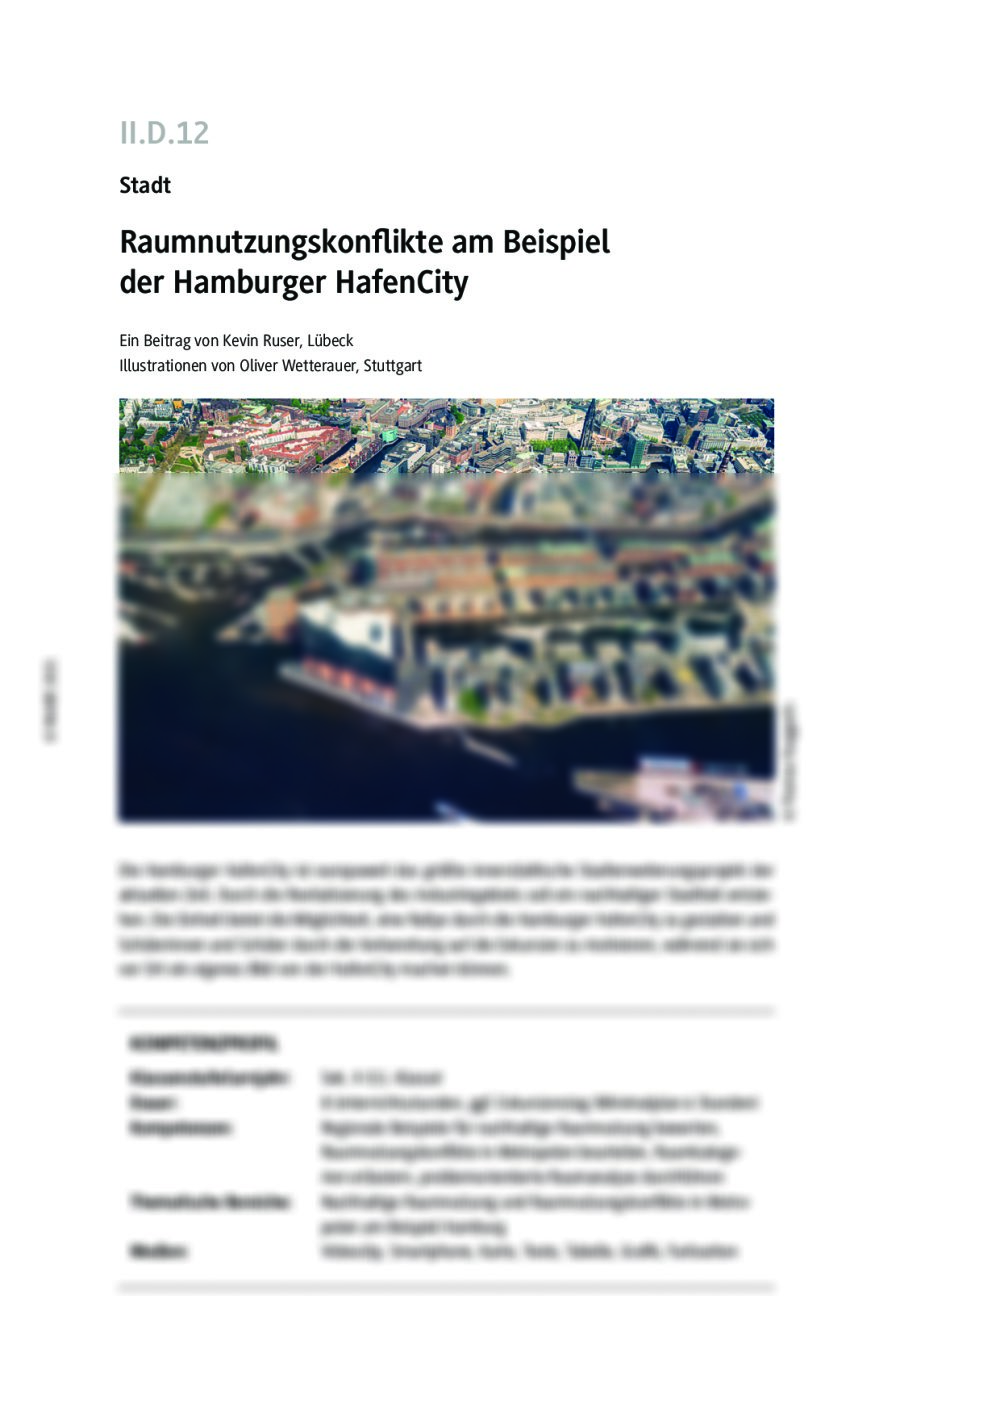 Raumnutzungskonflikte am Beispiel der Hamburger HafenCity - Seite 1